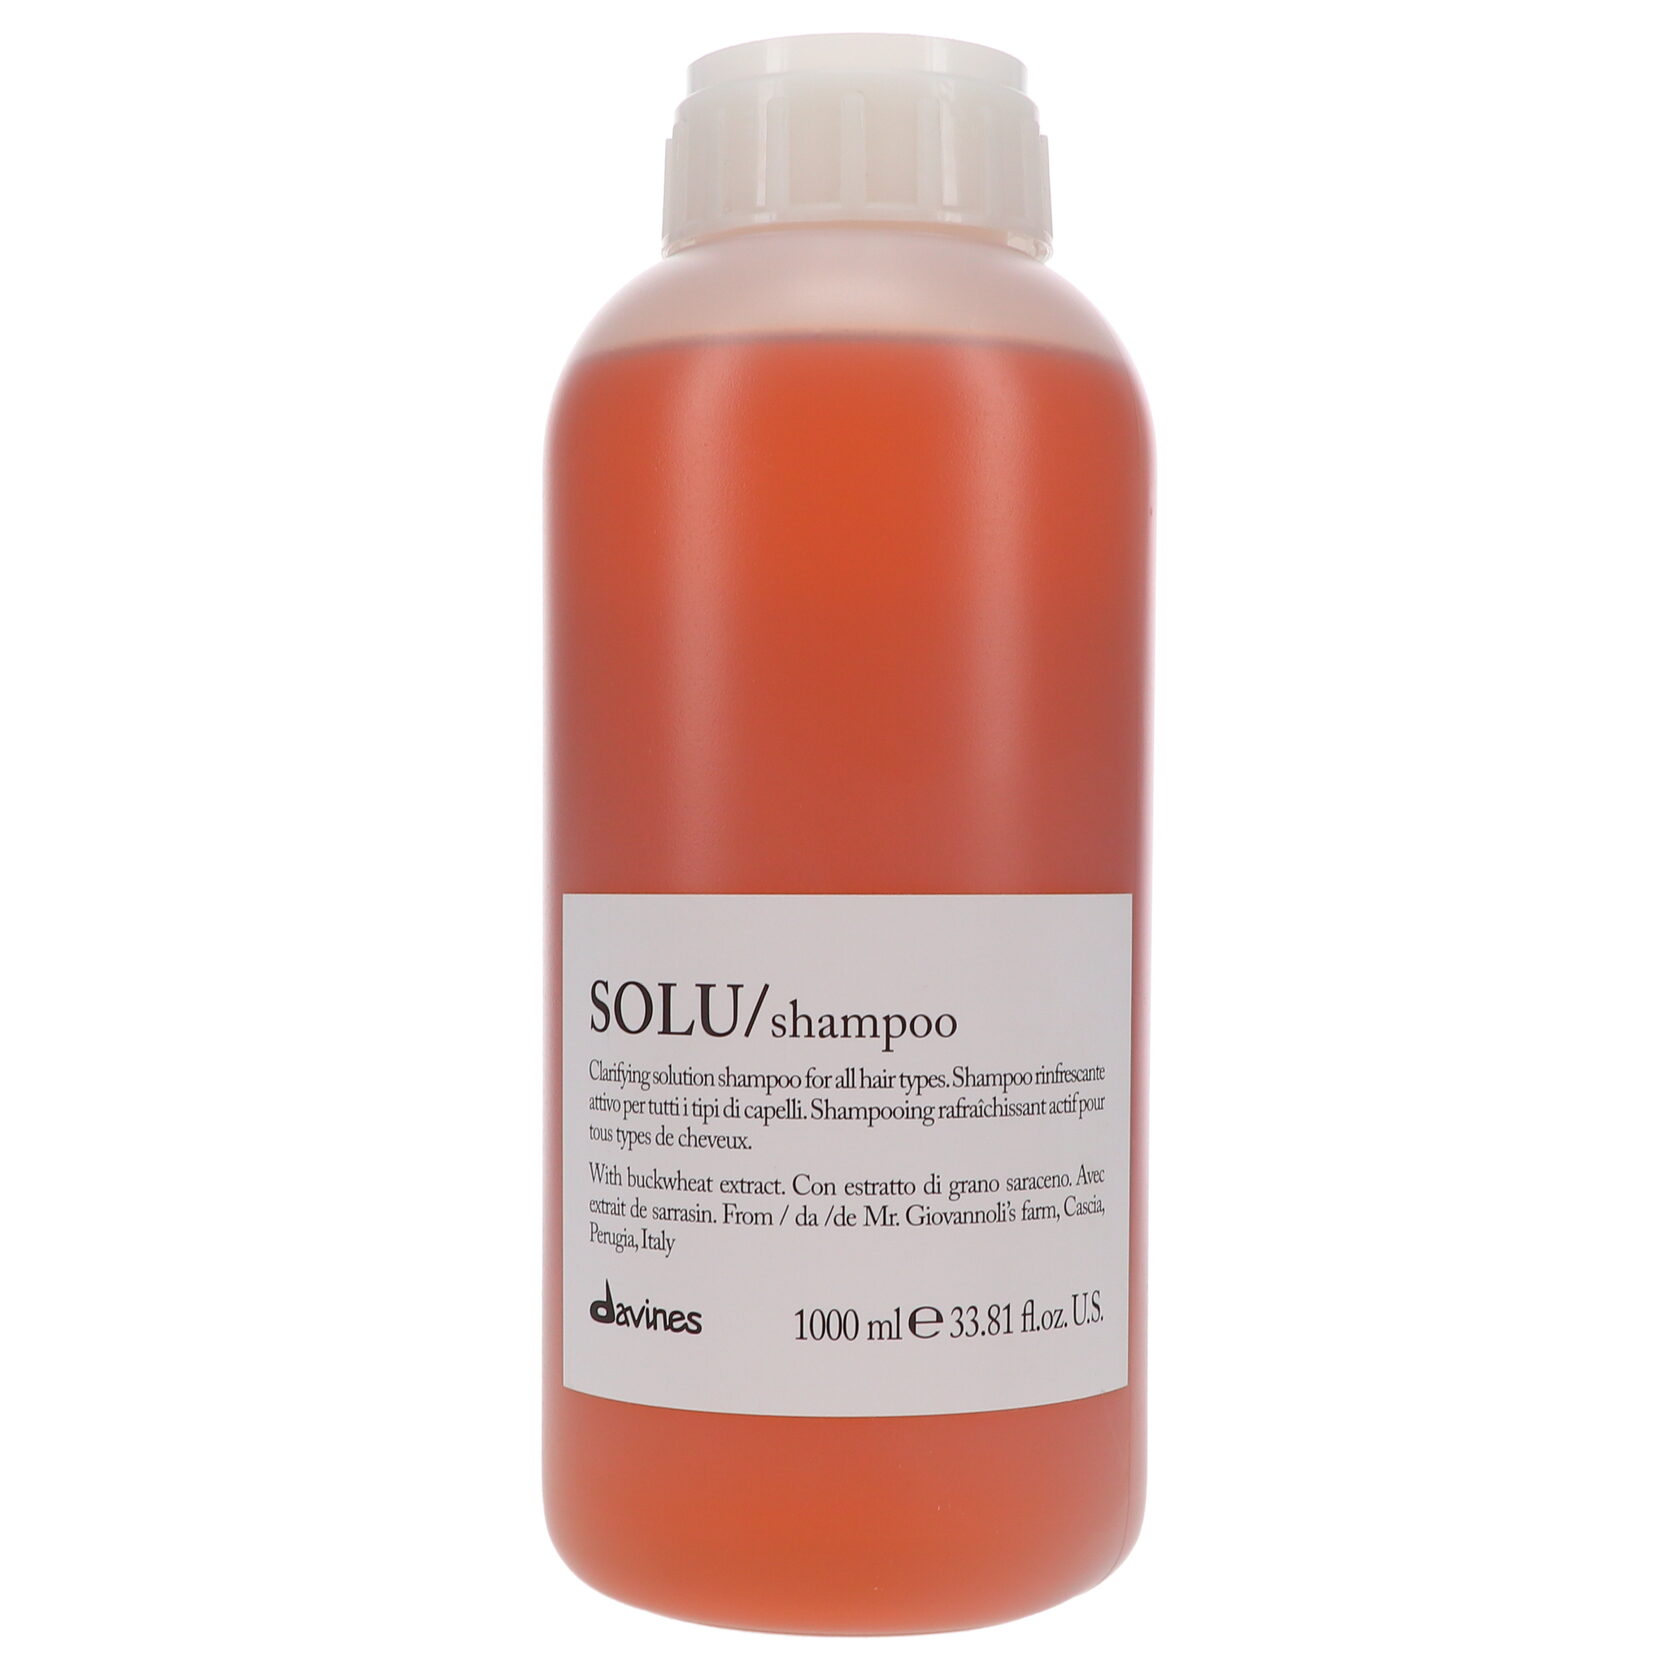 Активно освежающий шампунь для глубокого очищения волос - Solu/shampoo 1000 ml